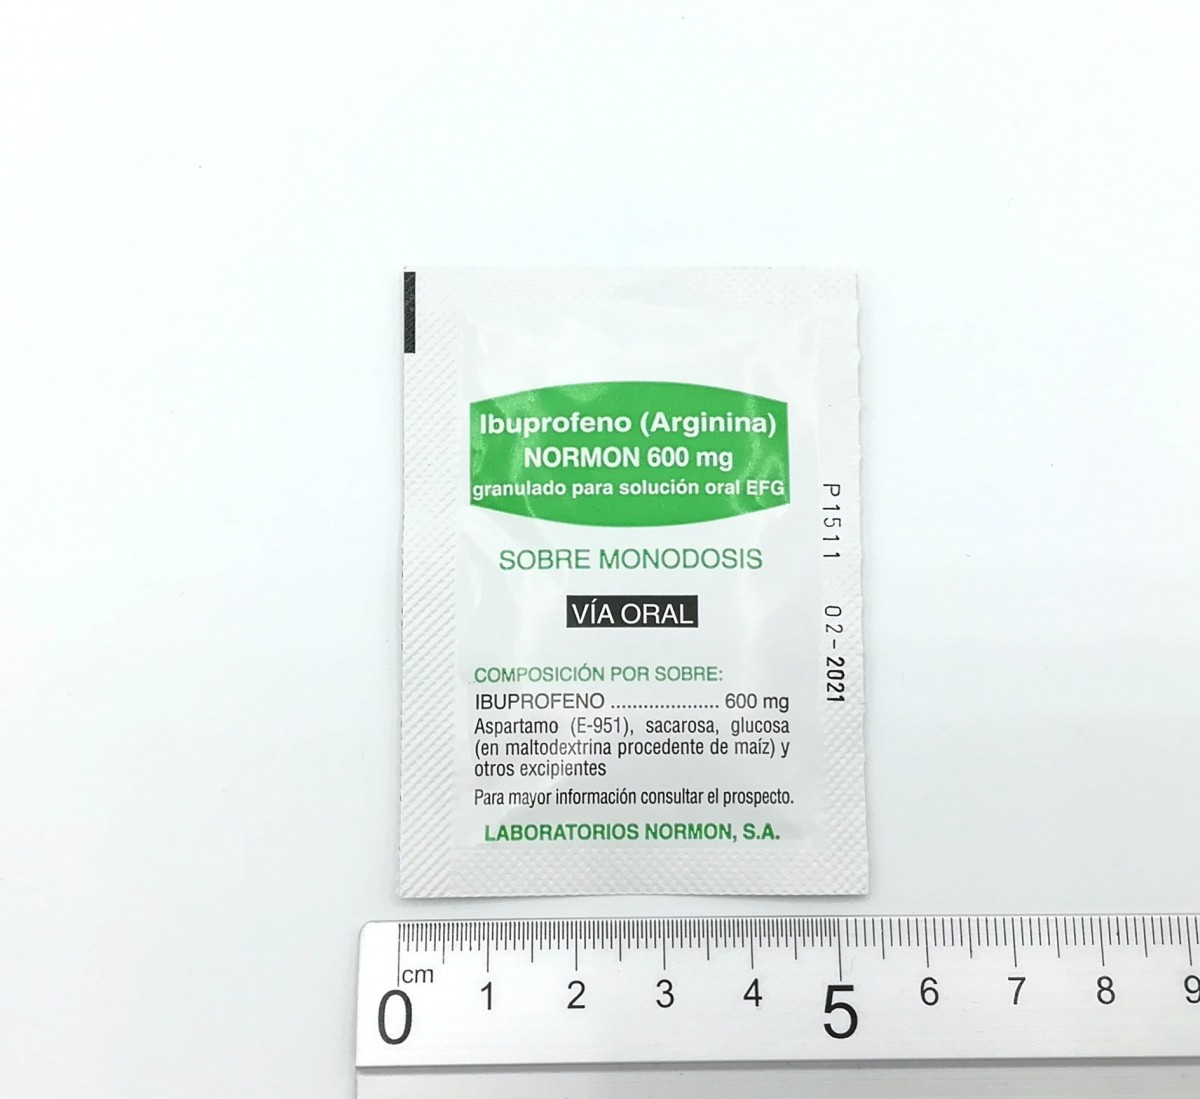 IBUPROFENO (ARGININA) NORMON 600 mg GRANULADO PARA SOLUCION ORAL EFG , 40 sobres fotografía de la forma farmacéutica.